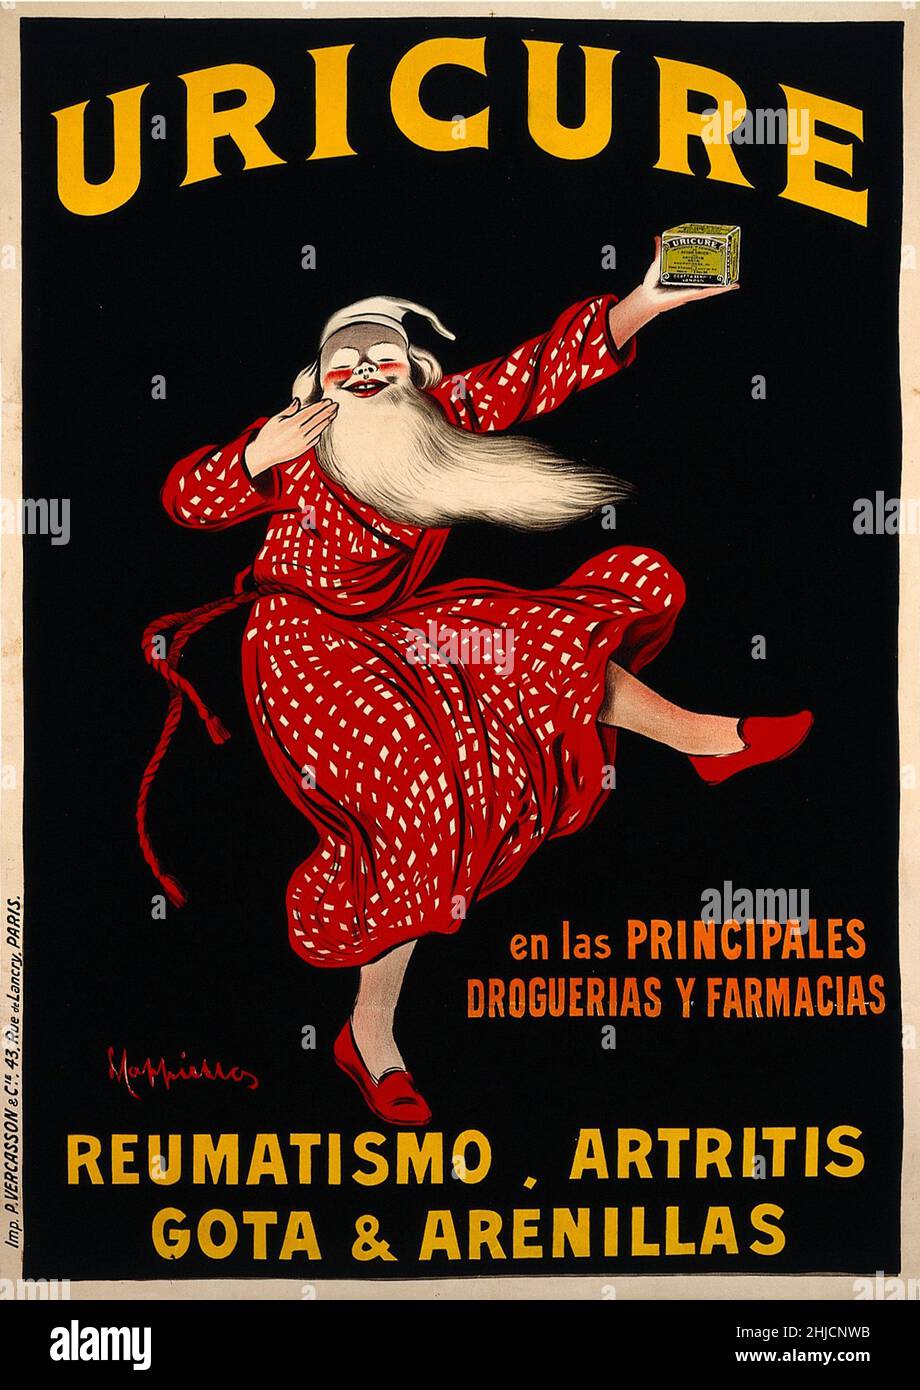 Ein alter Mann in Nachtkleidung hält eine Schachtel mit Uricure-Pillen als Werbung für ihre Wirksamkeit gegen rheumatische Erkrankungen in der Hand. Kolorierte Lithographie von Leonetto Cappiello, c. 1910. Stockfoto